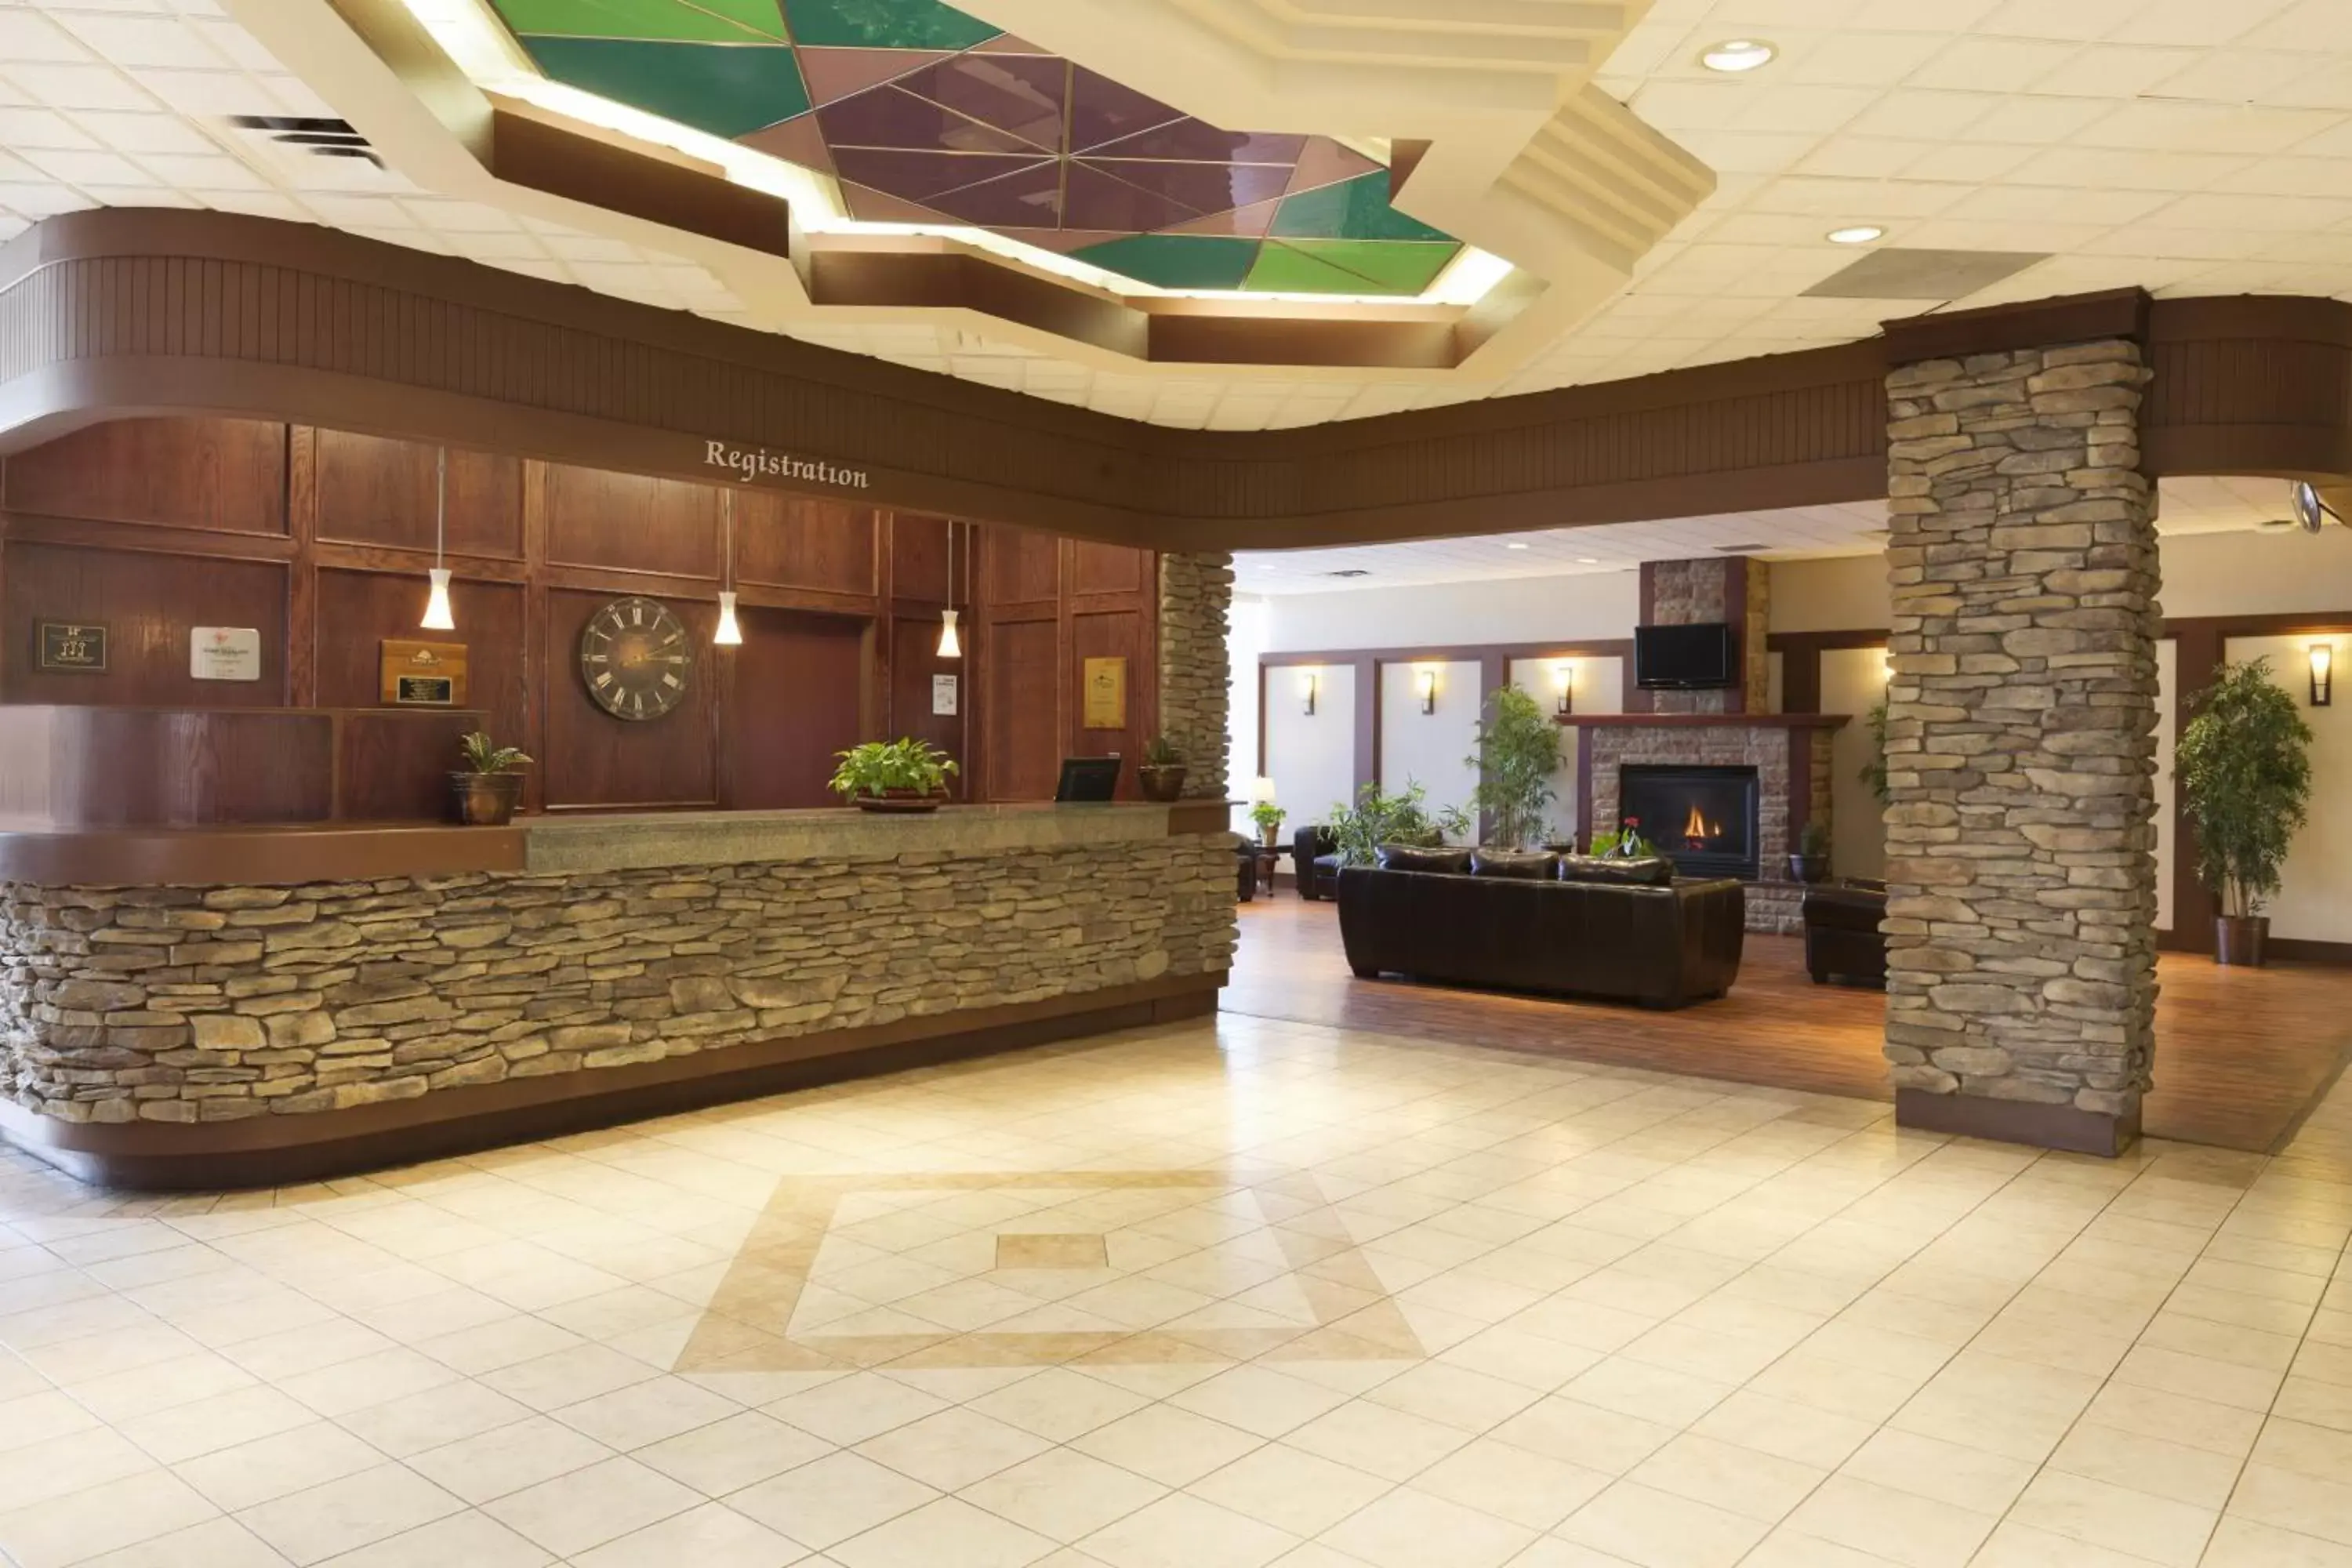 Lobby or reception, Lobby/Reception in Days Inn by Wyndham Calgary South